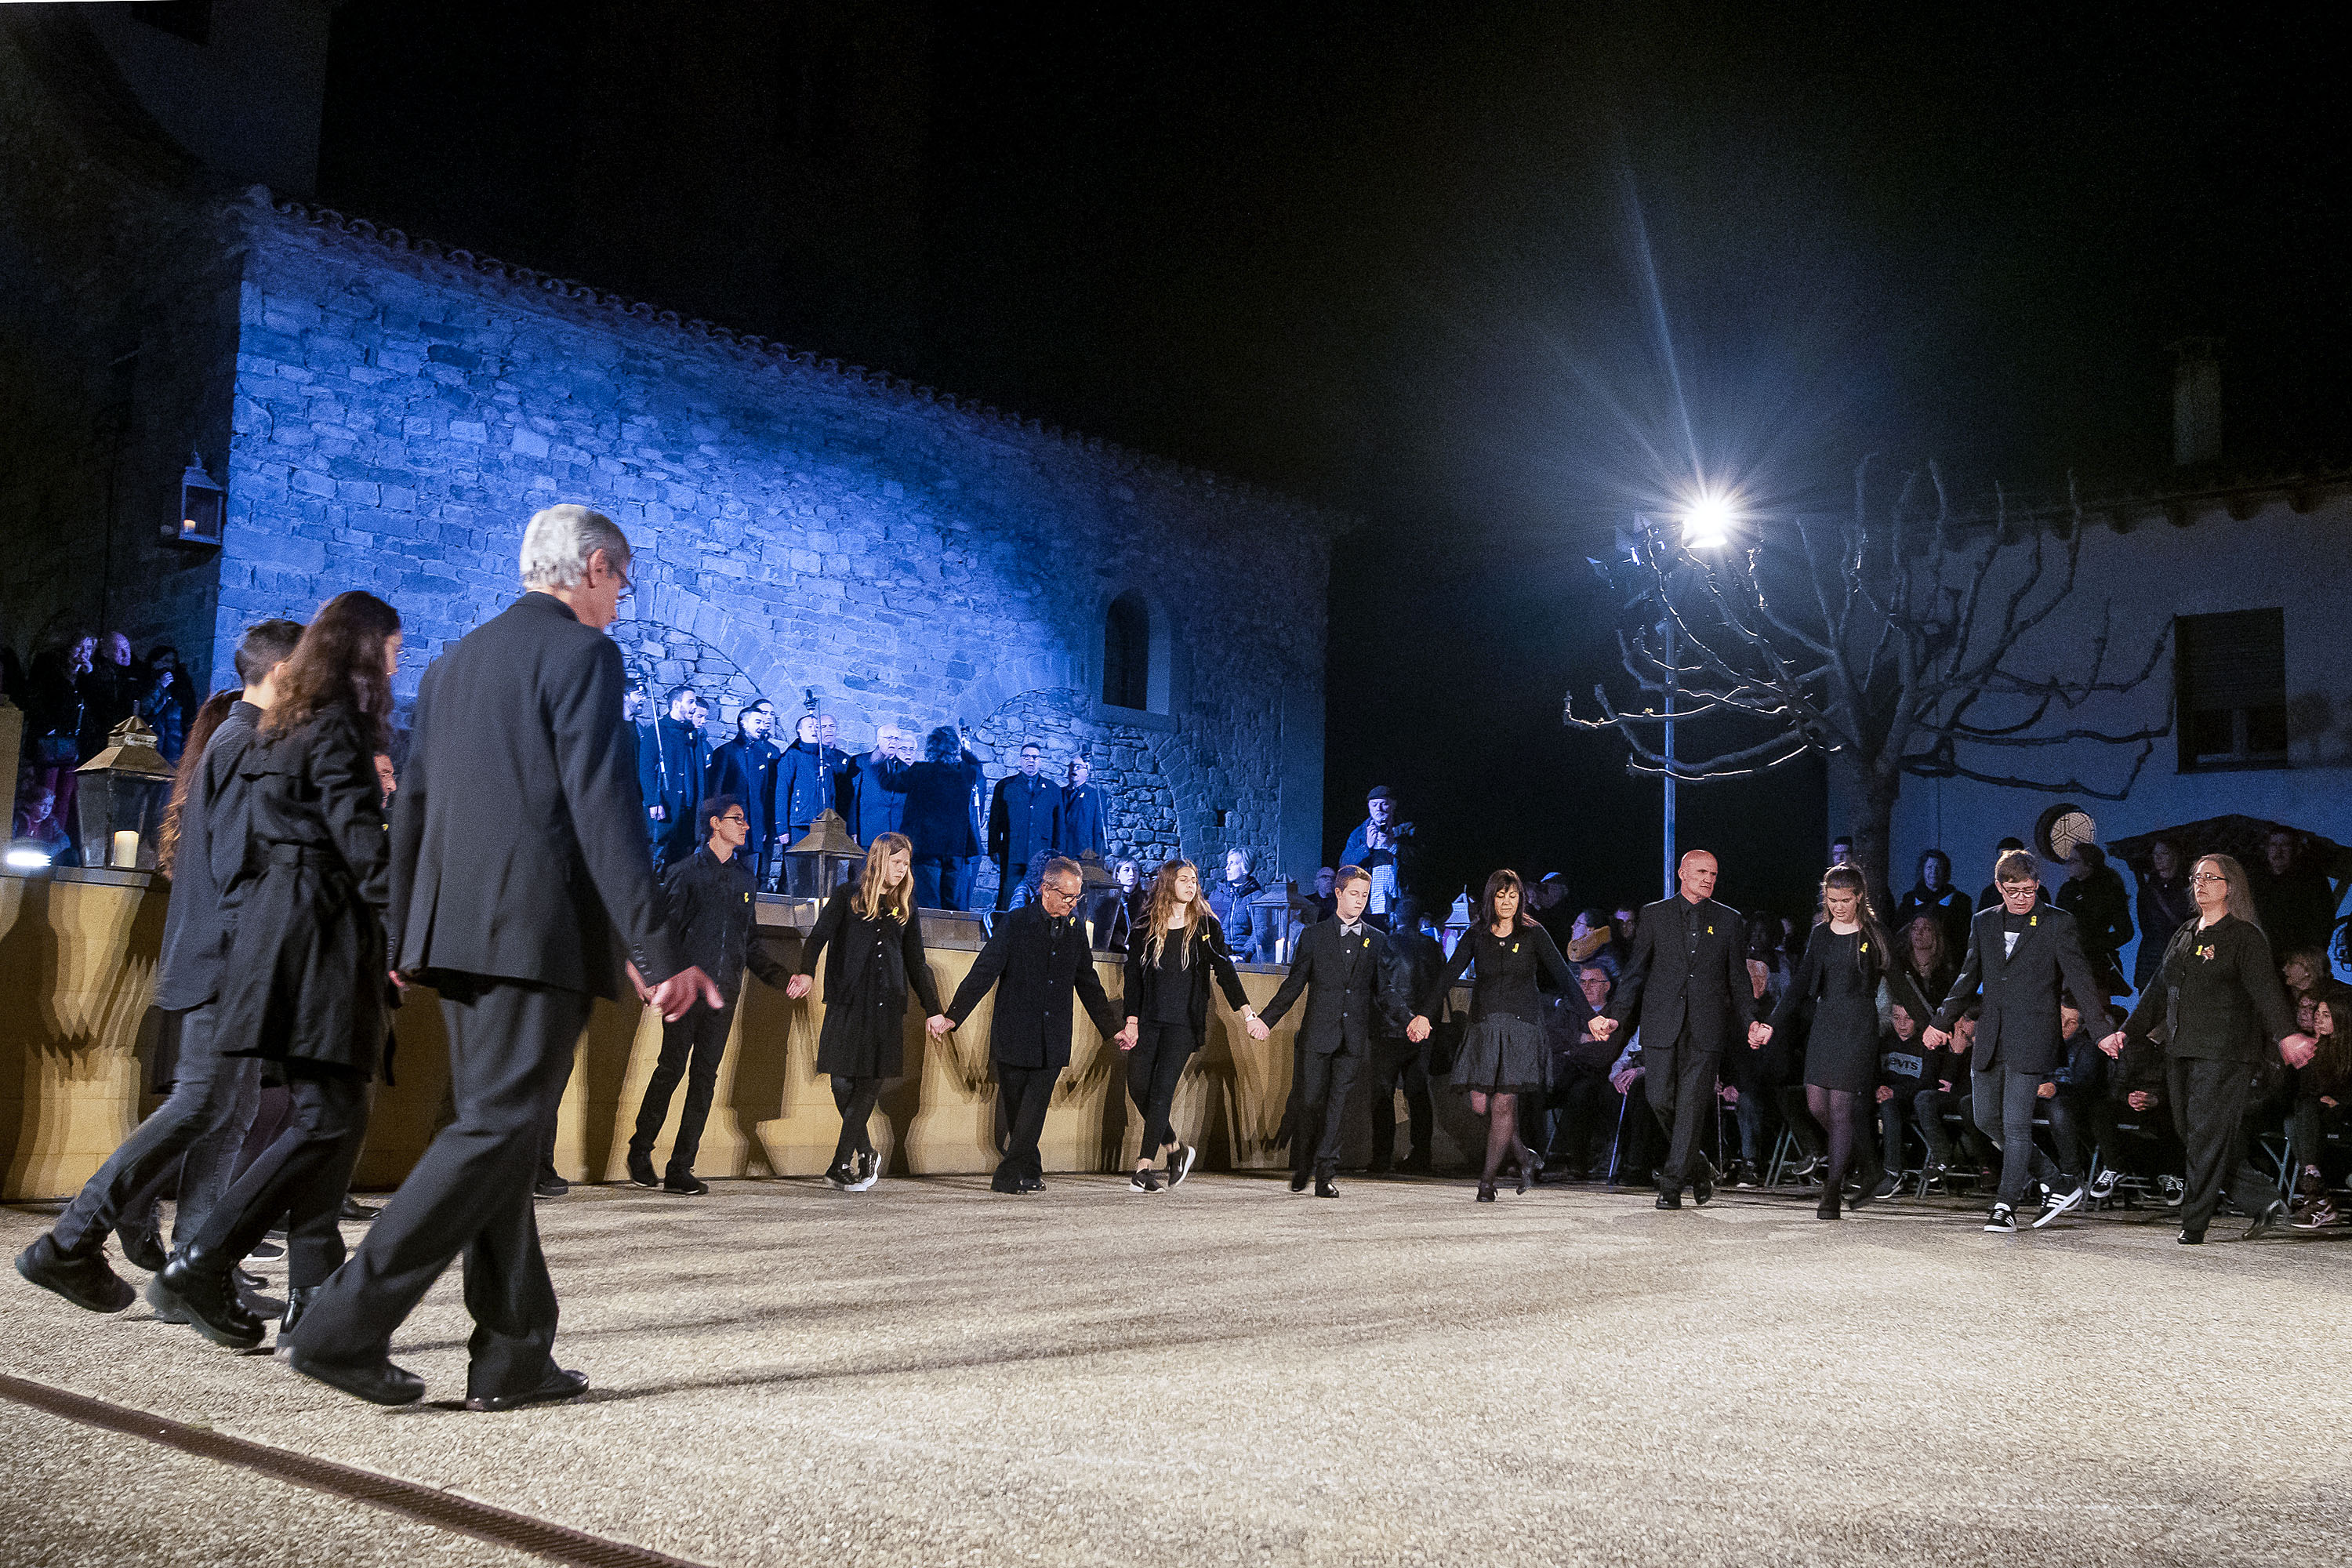 Un moment de la representació del Divino aquest dissabte a la nit a la plaça de l'Església de Sant Vicenç